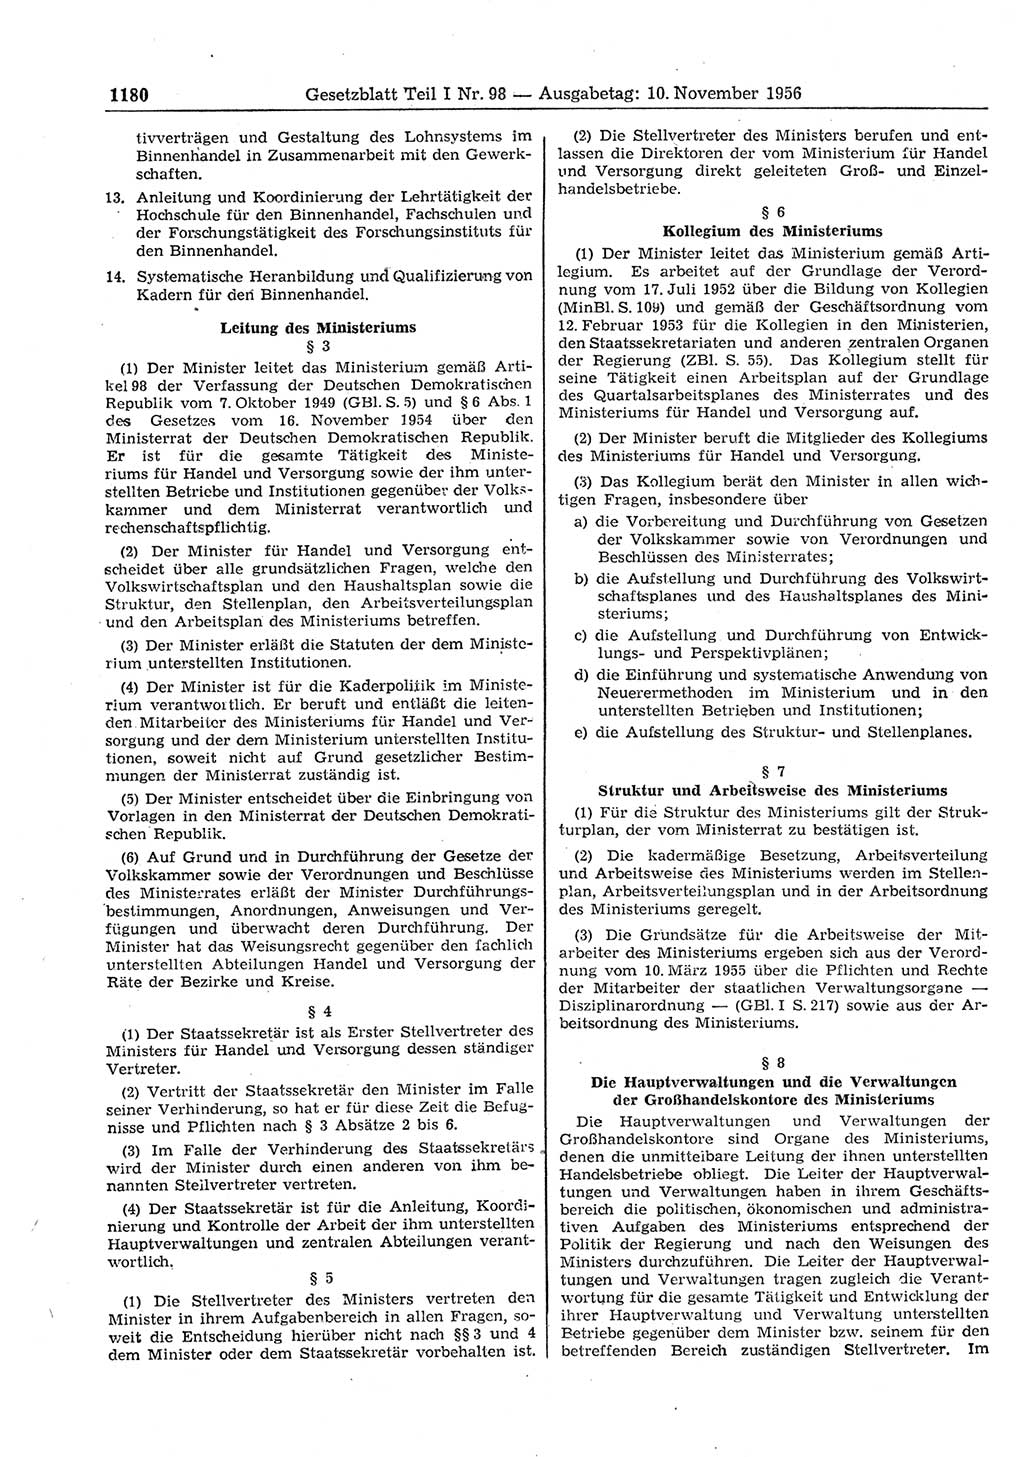 Gesetzblatt (GBl.) der Deutschen Demokratischen Republik (DDR) Teil Ⅰ 1956, Seite 1180 (GBl. DDR Ⅰ 1956, S. 1180)